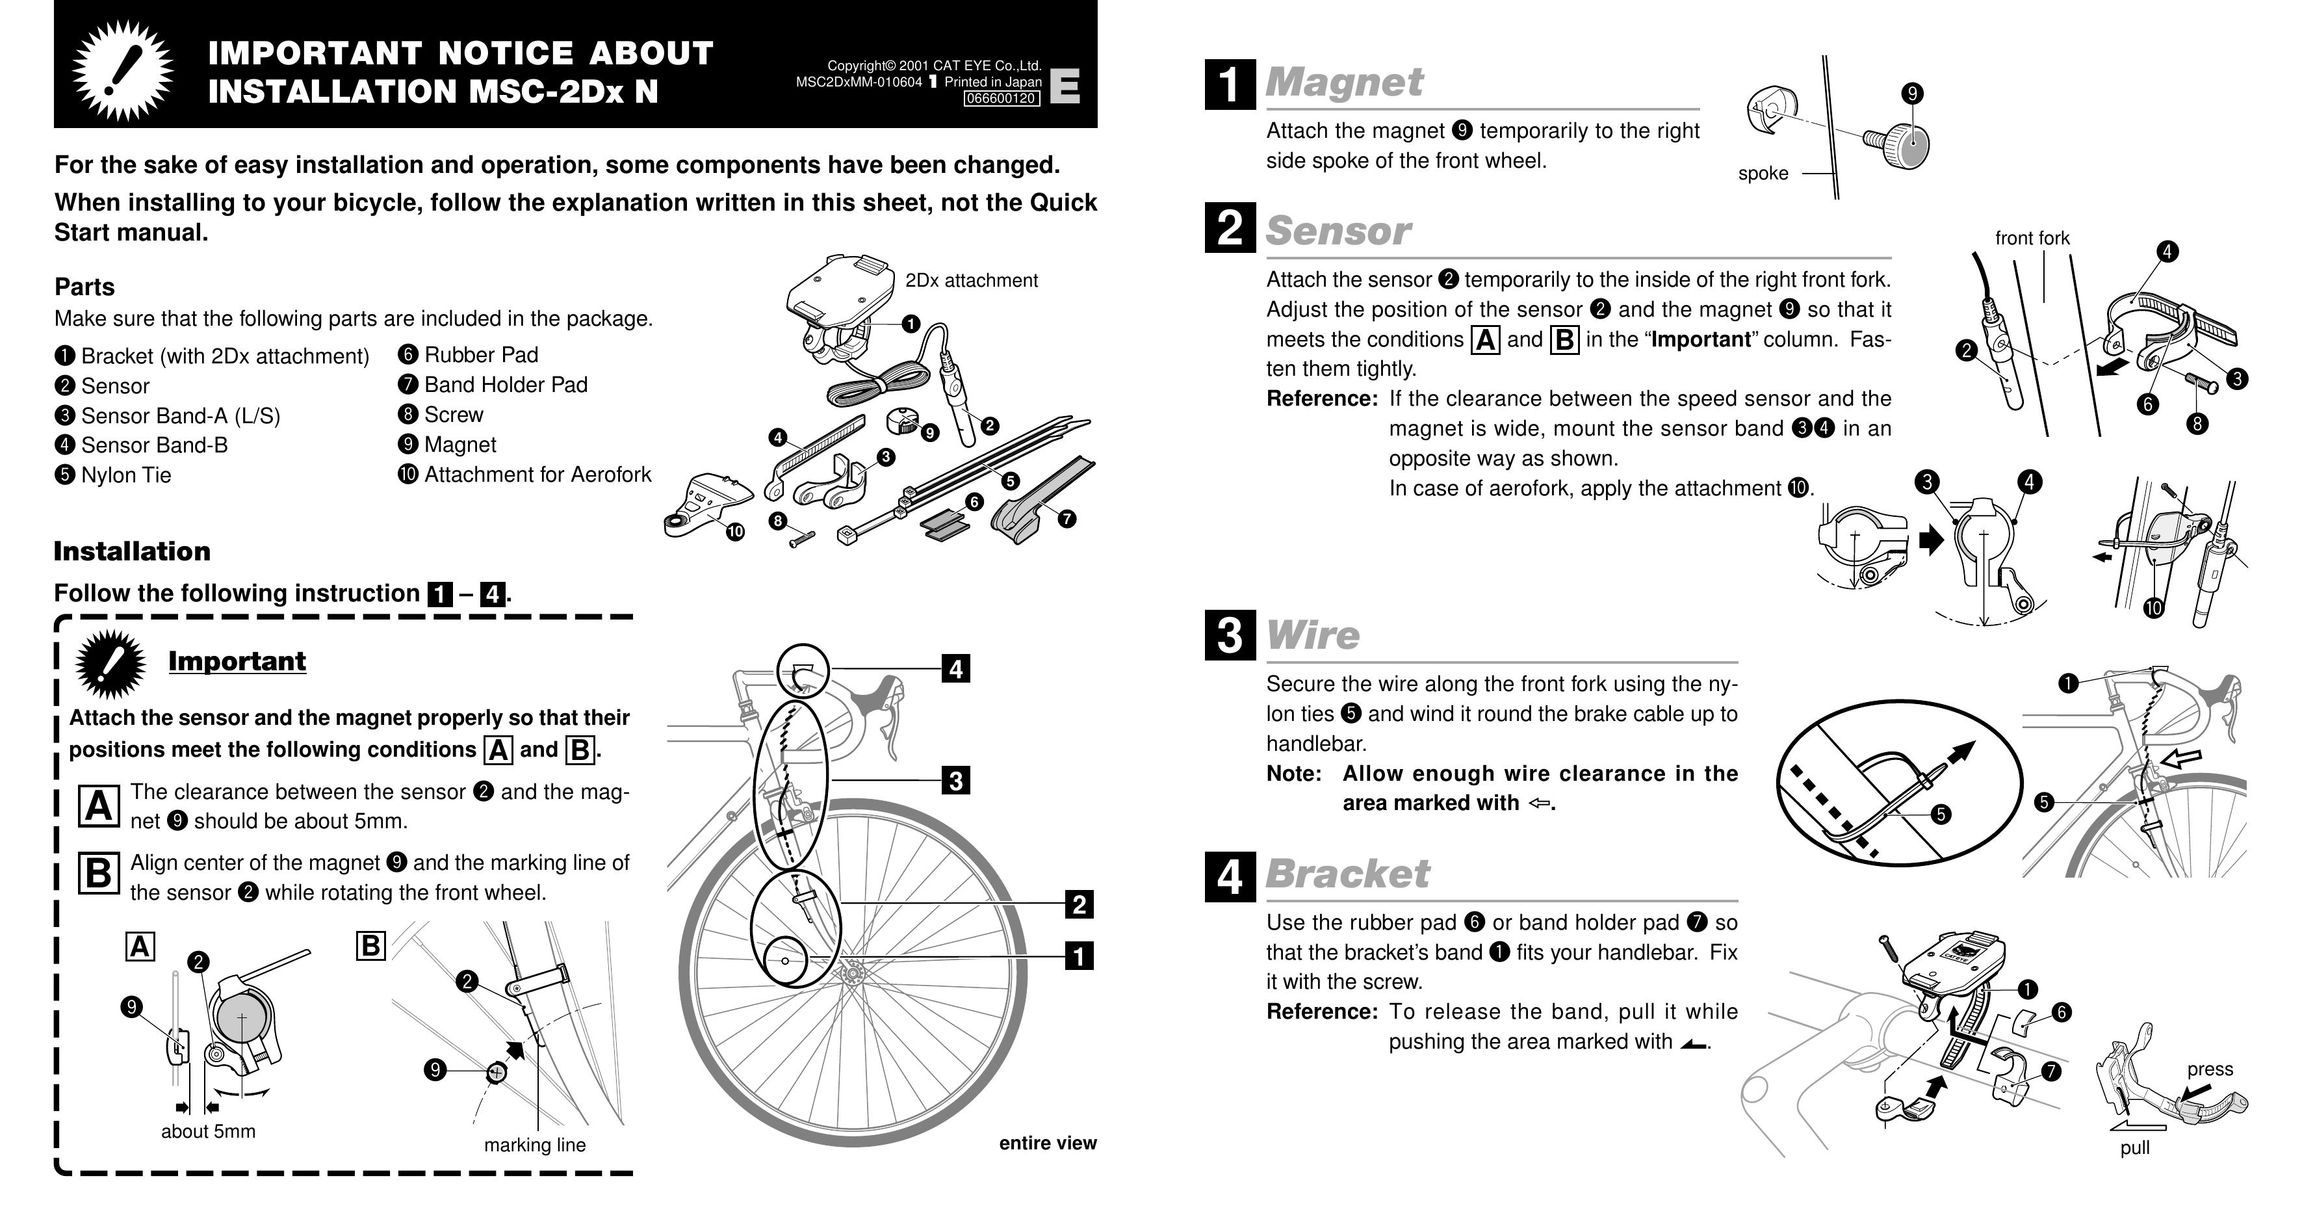 Cateye MSC-2DX N Bicycle User Manual